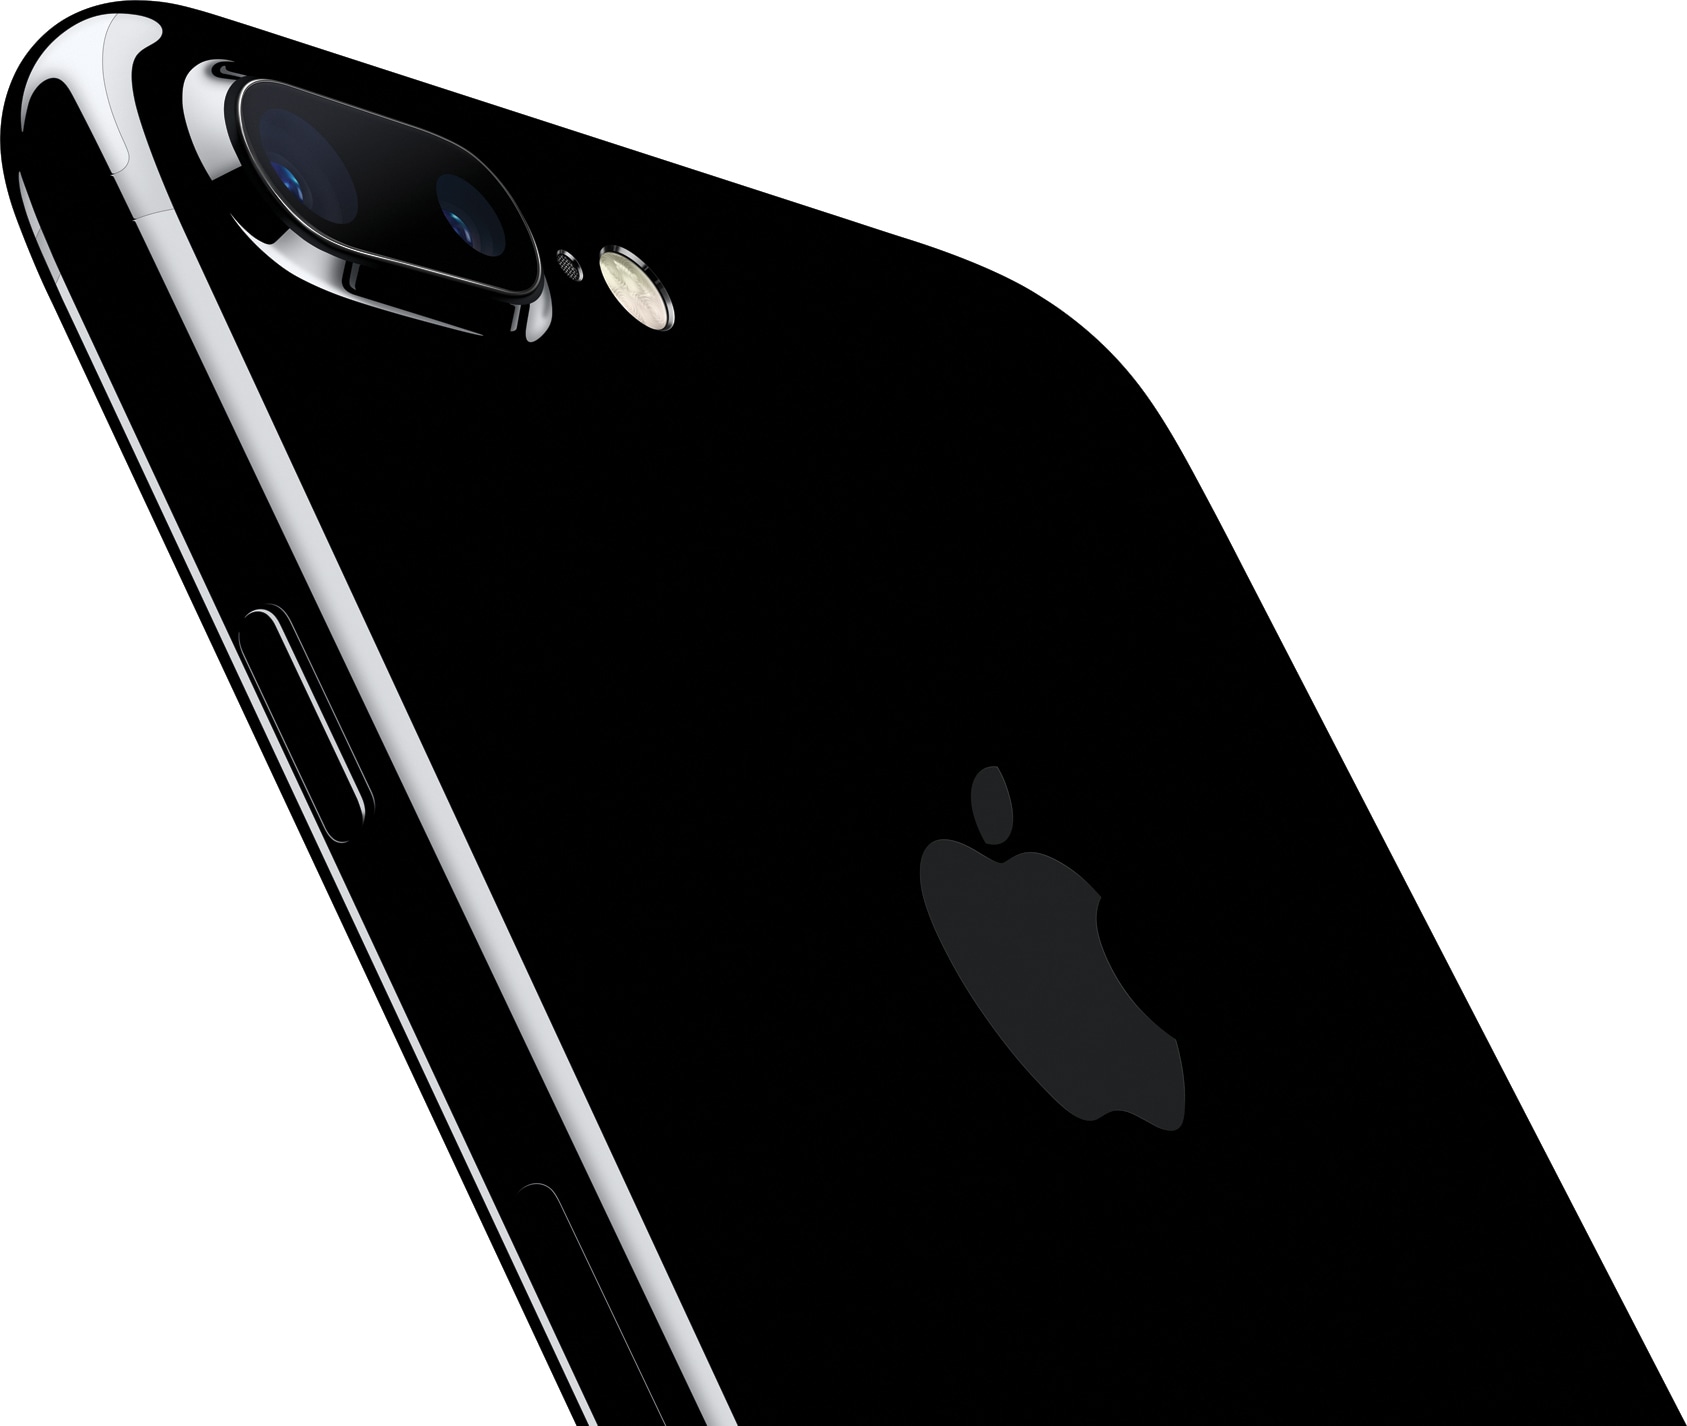 iPhone 7 Plus jet black tilted back